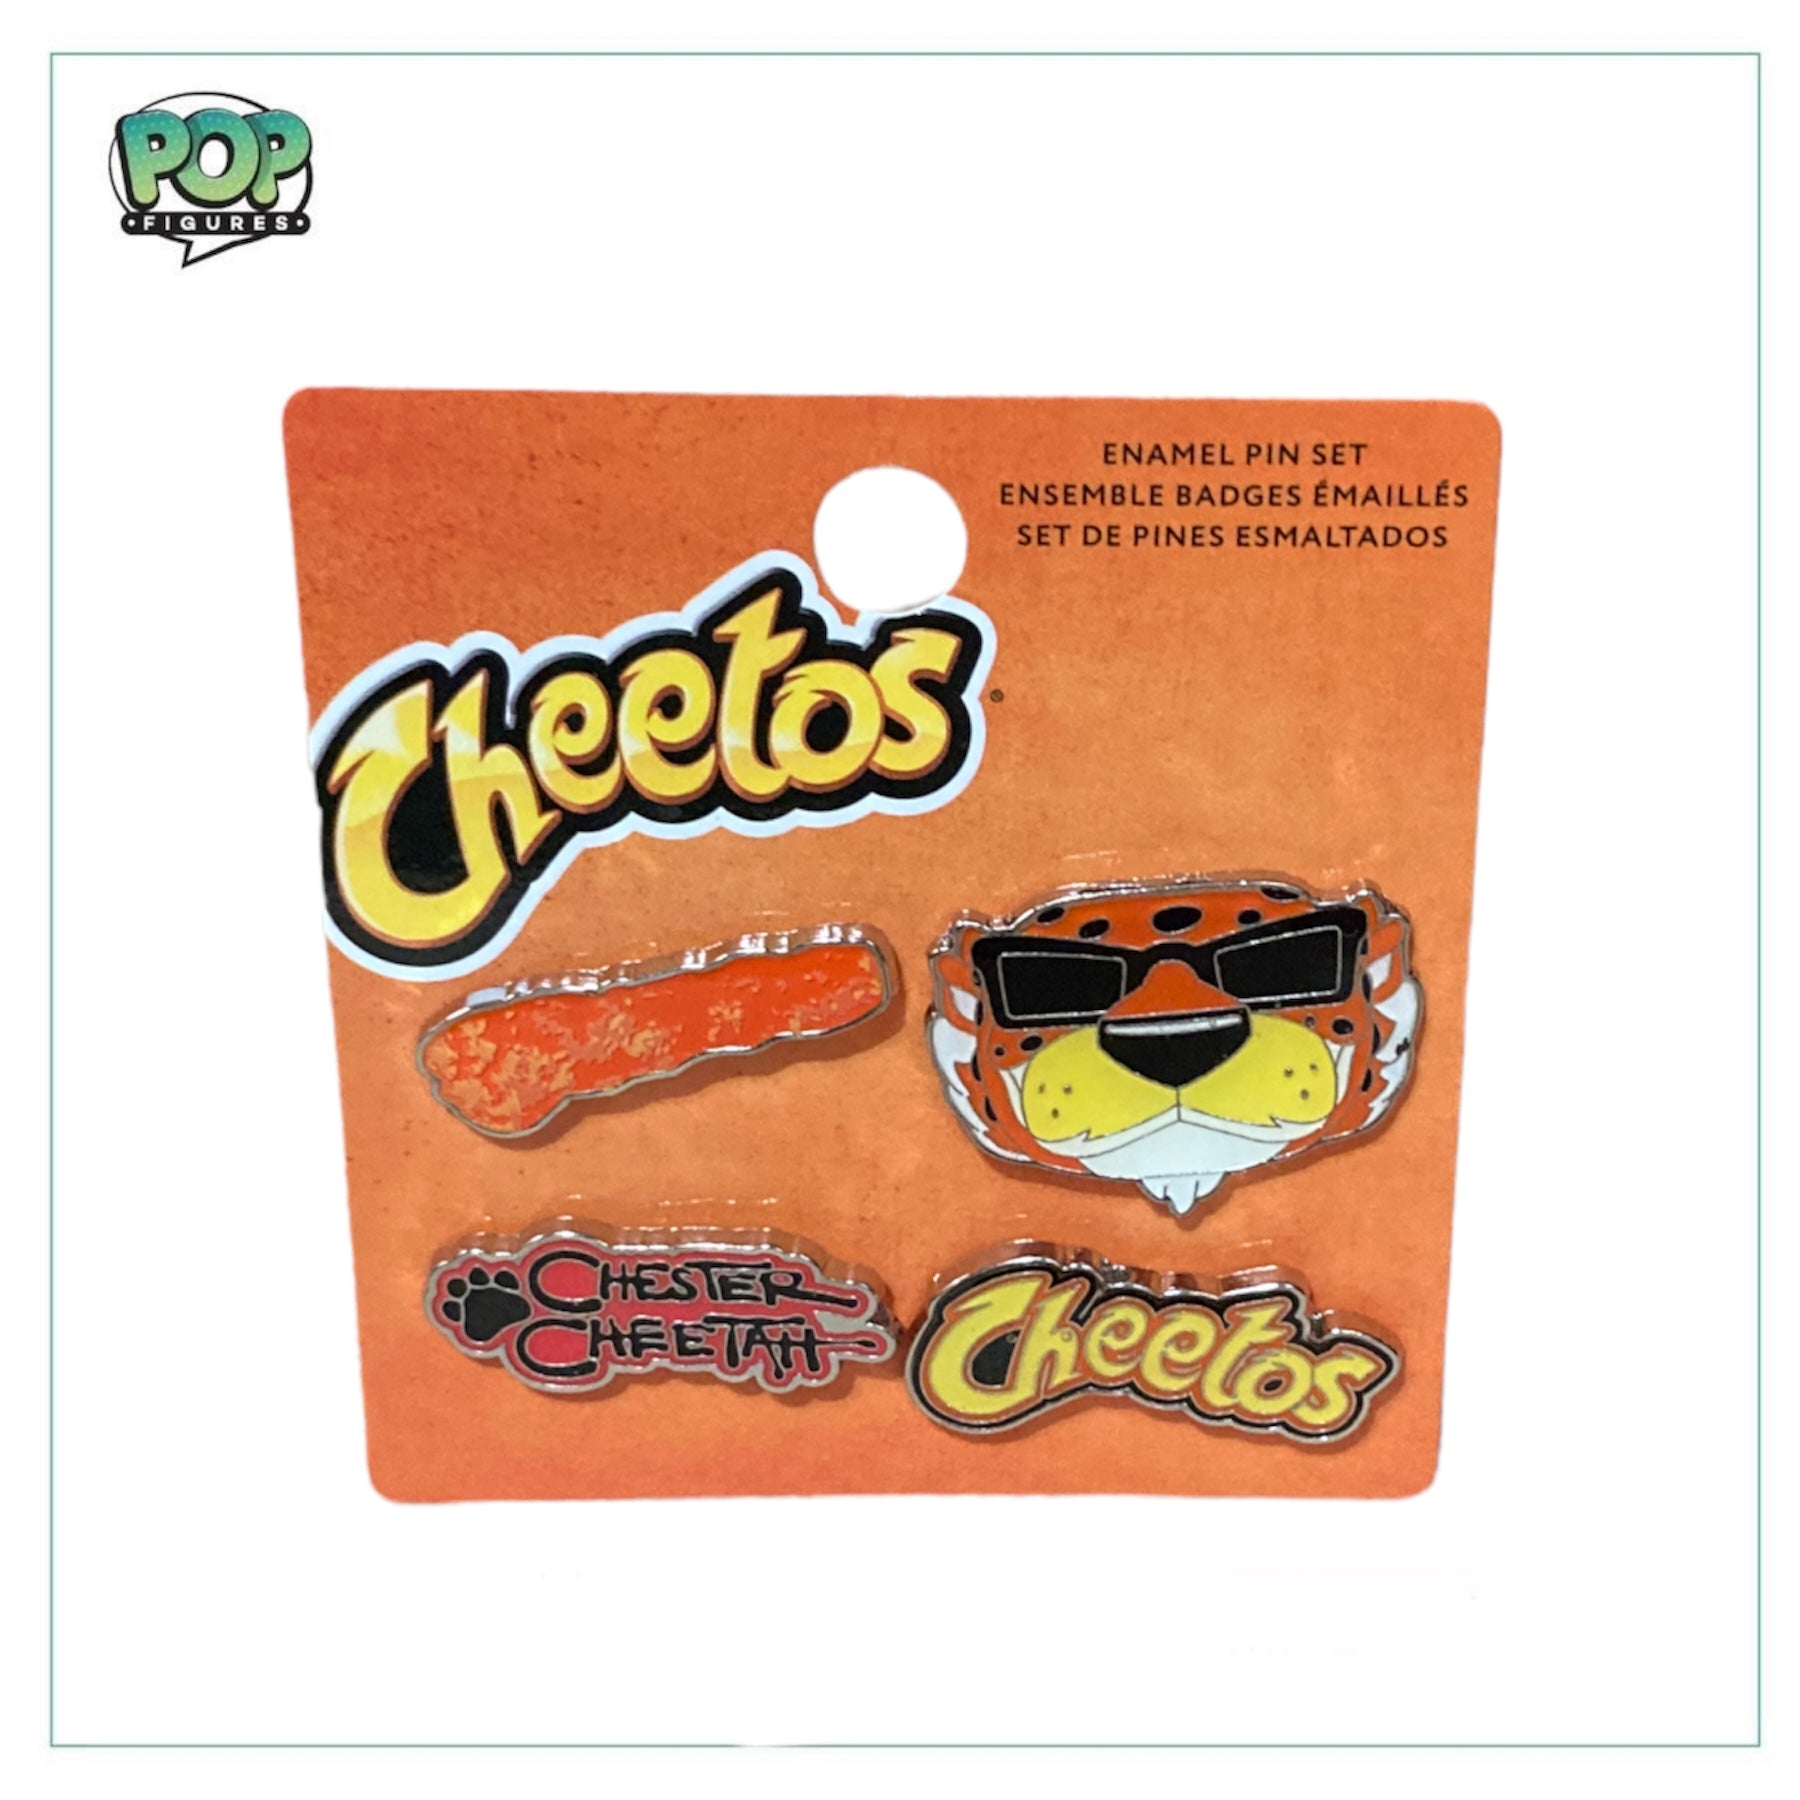 Cheetos 4 Pack Enamel Pin Set! Cheetos